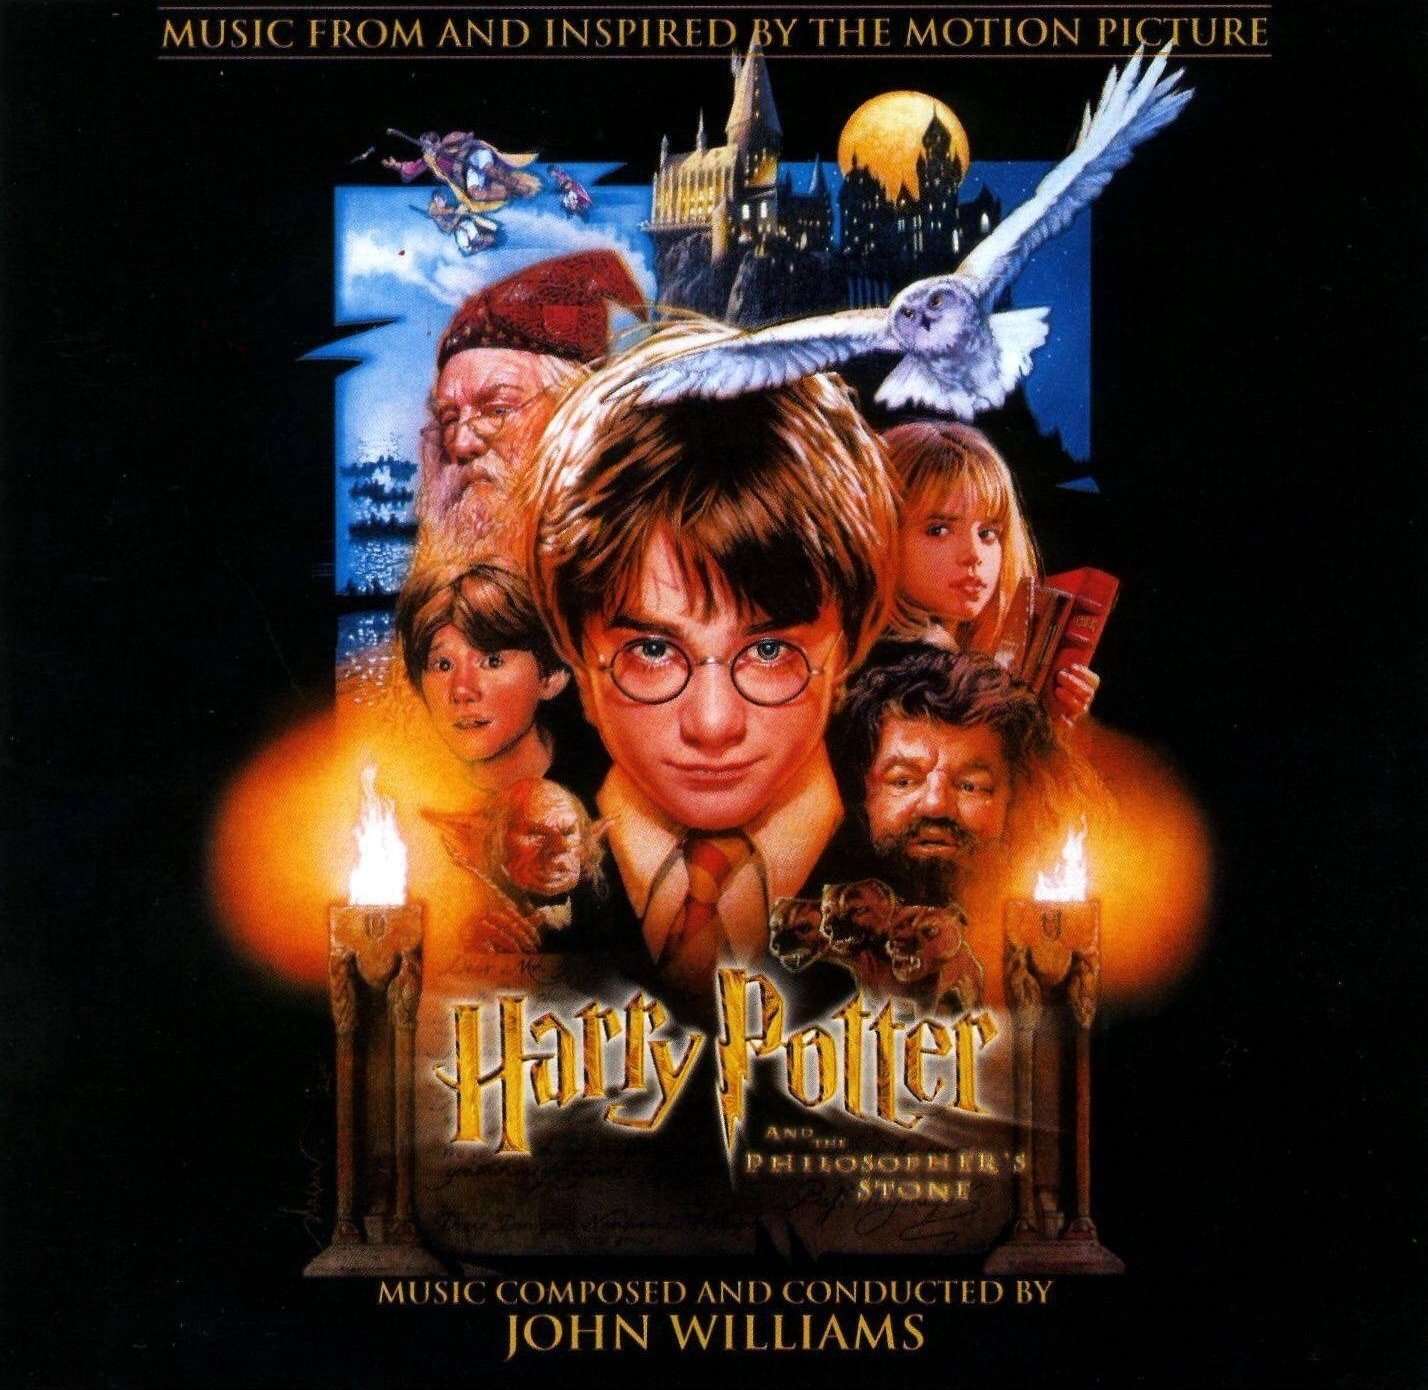 Harry Potter soundtracks